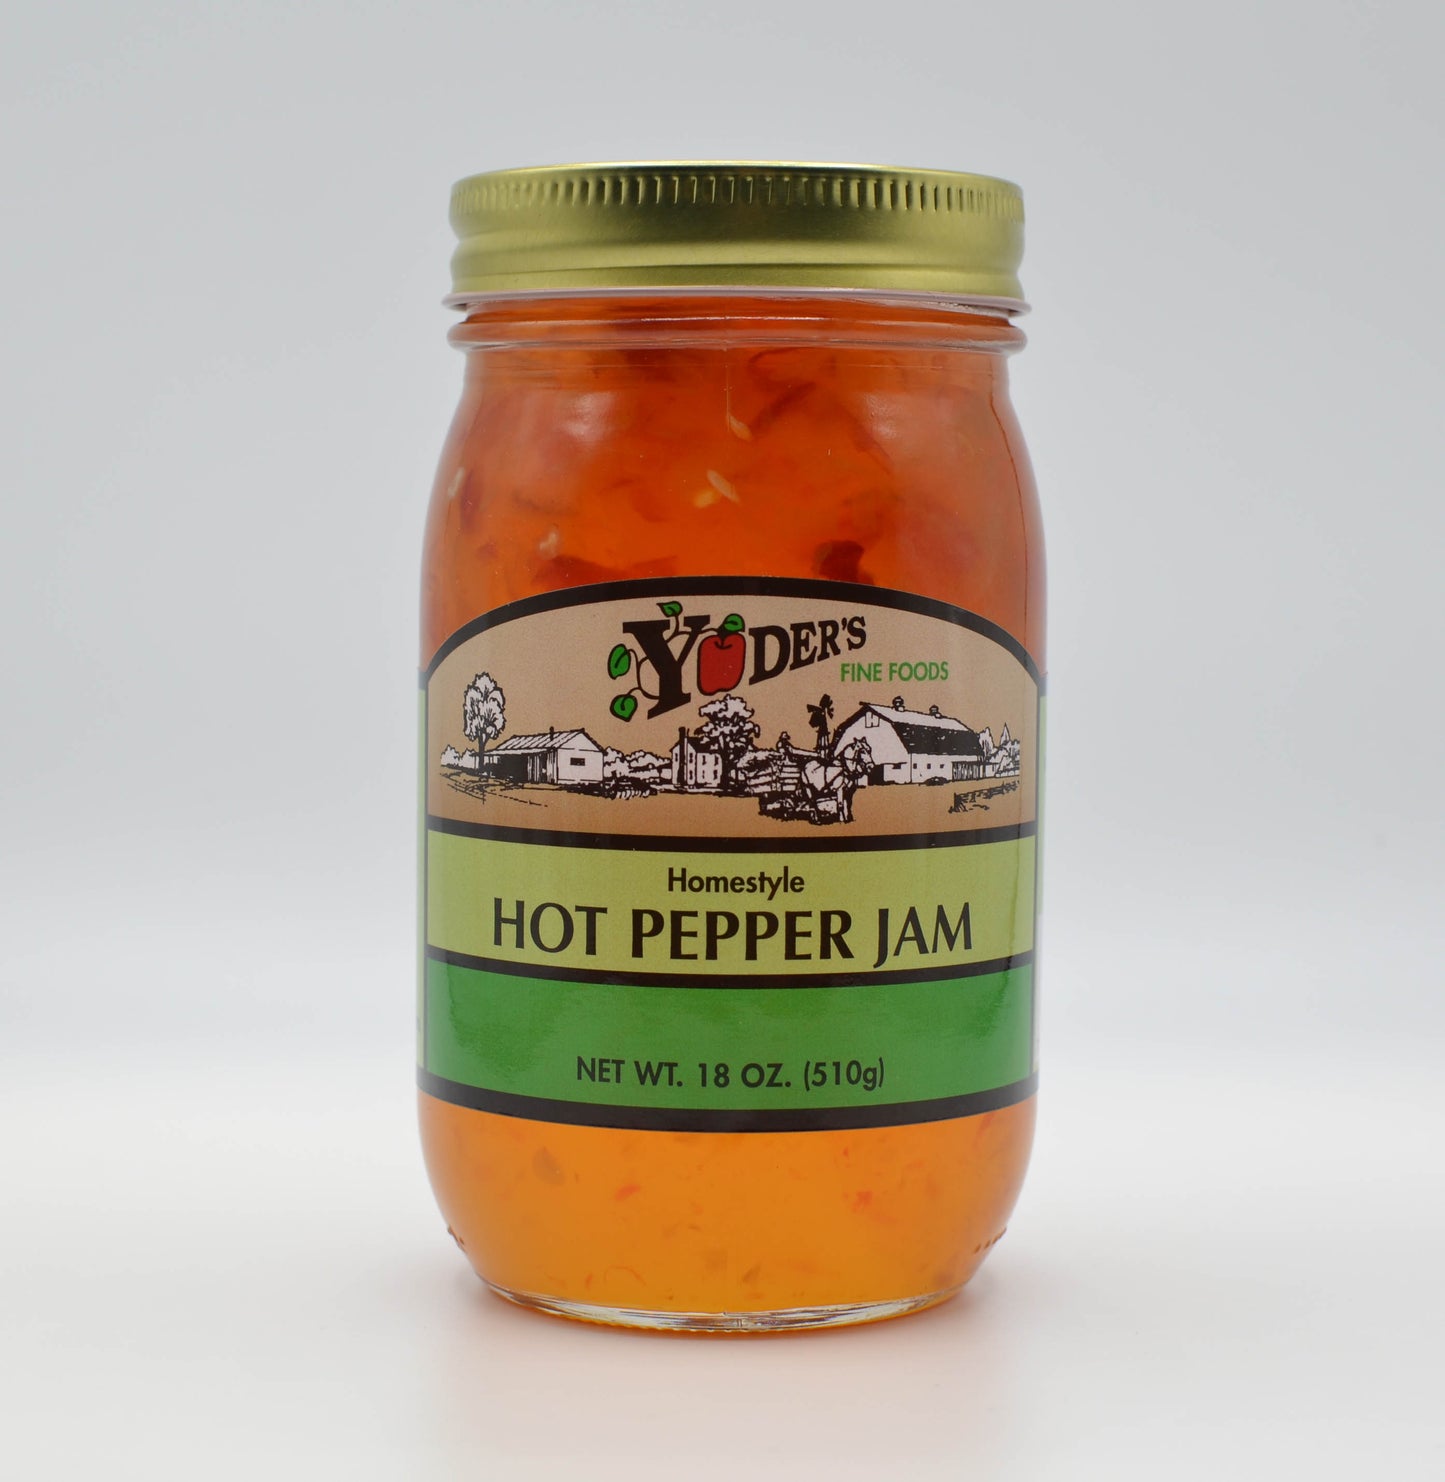 Hot Pepper Jam